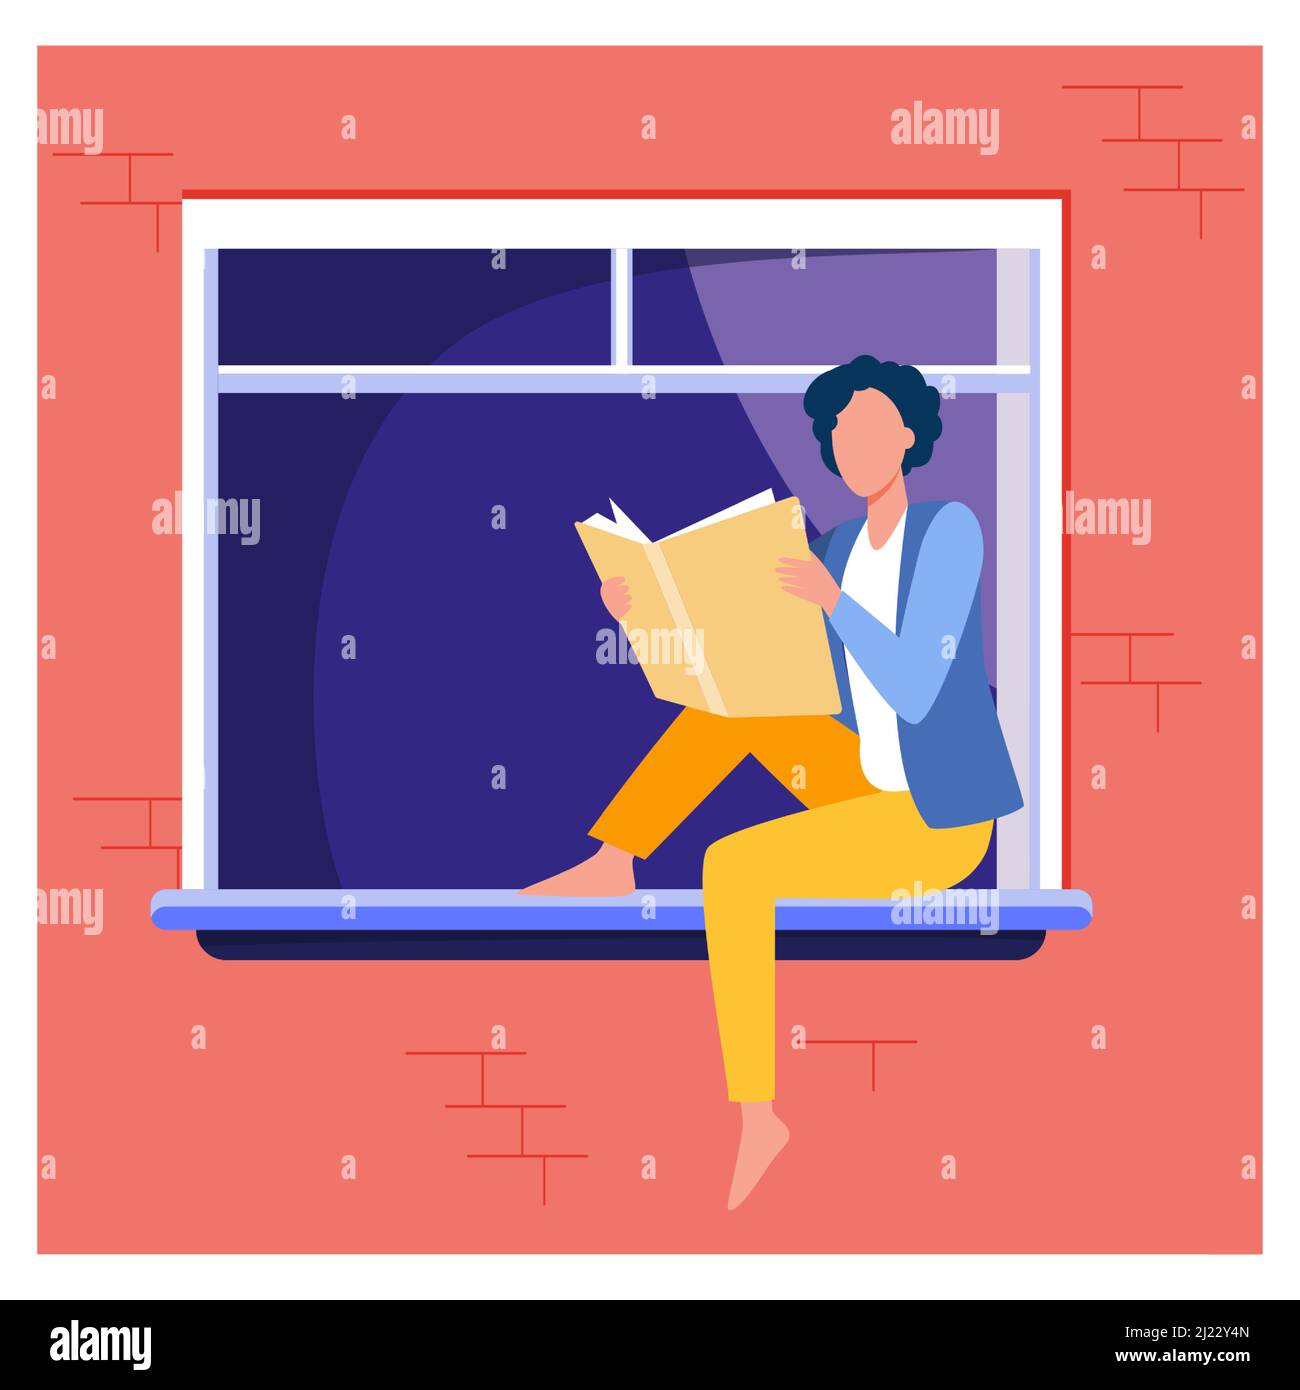 Junge Frau liest Buch auf Fensterbank. Mädchen genießen Roman, Student zu Hause Aufgabe flach Vektor Illustration. Wissen, Literatur, Leserkonzept f Stock Vektor